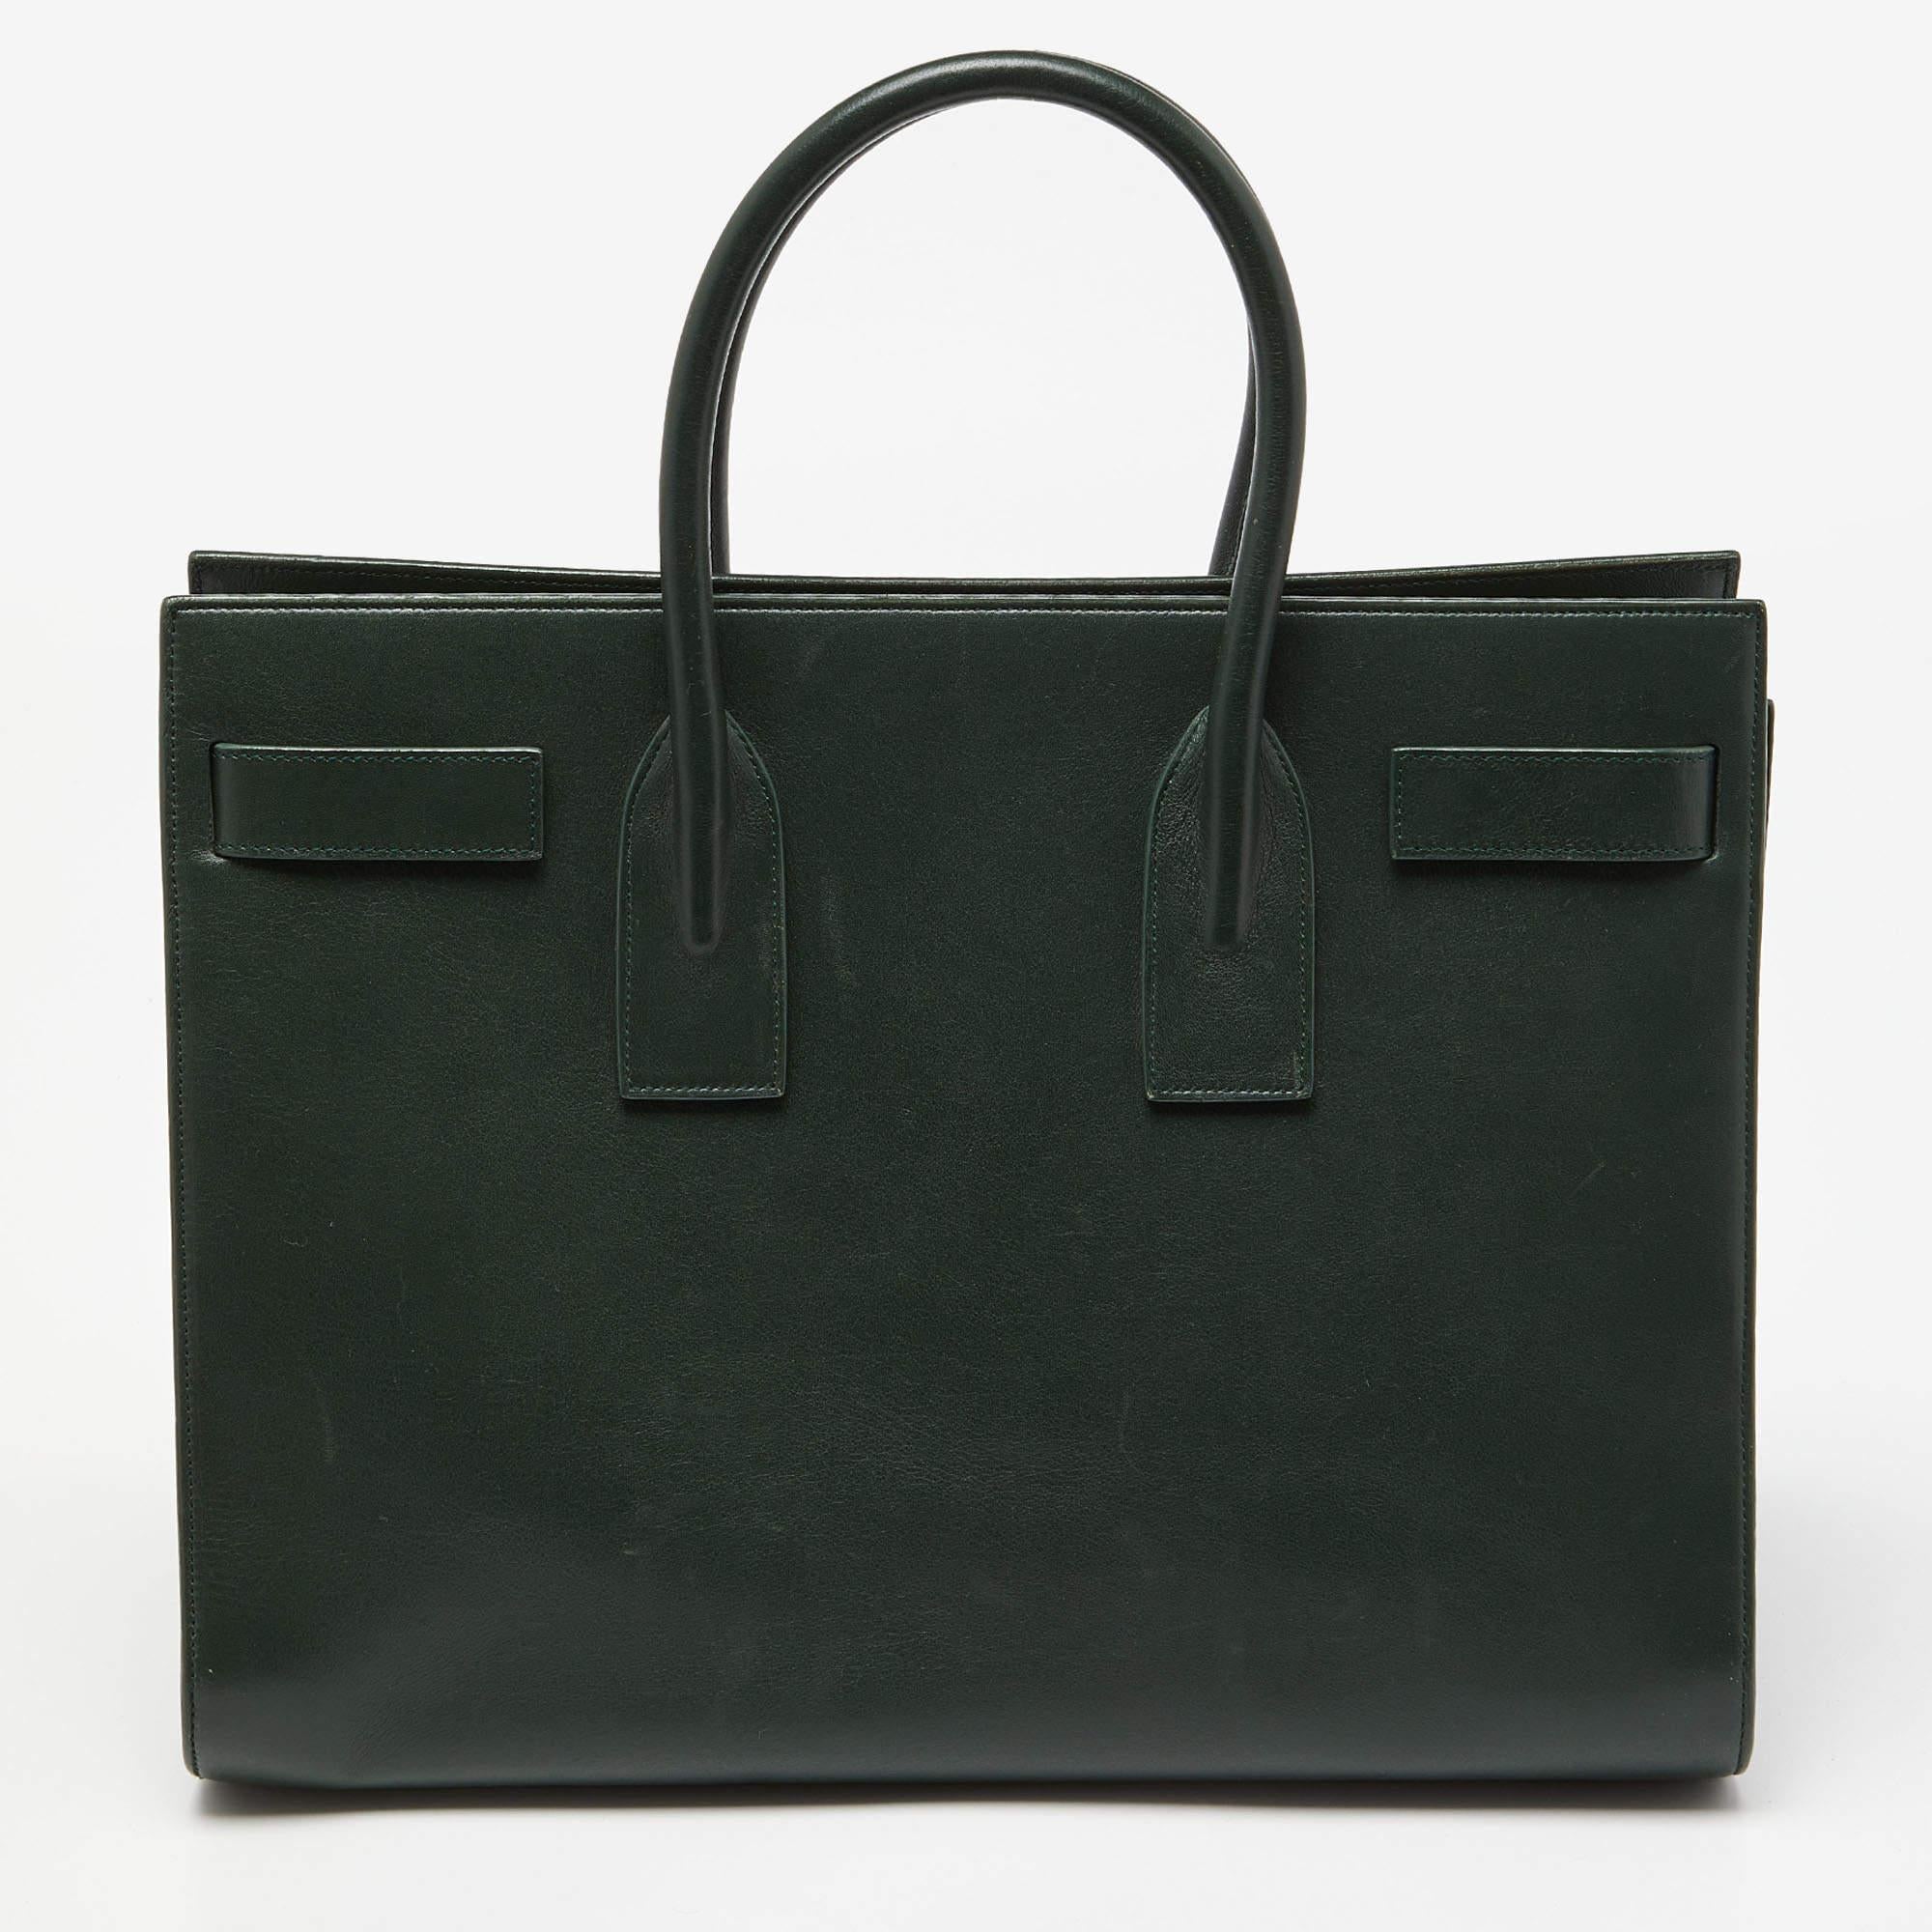 Ce sac à main Sac de Jour de Saint Laurent a une structure qui affiche une image sophistiquée. Confectionné en cuir vert, le sac peut être porté de manière chic par des doubles poignées supérieures et une bandoulière. Le fourre-tout est doté d'un